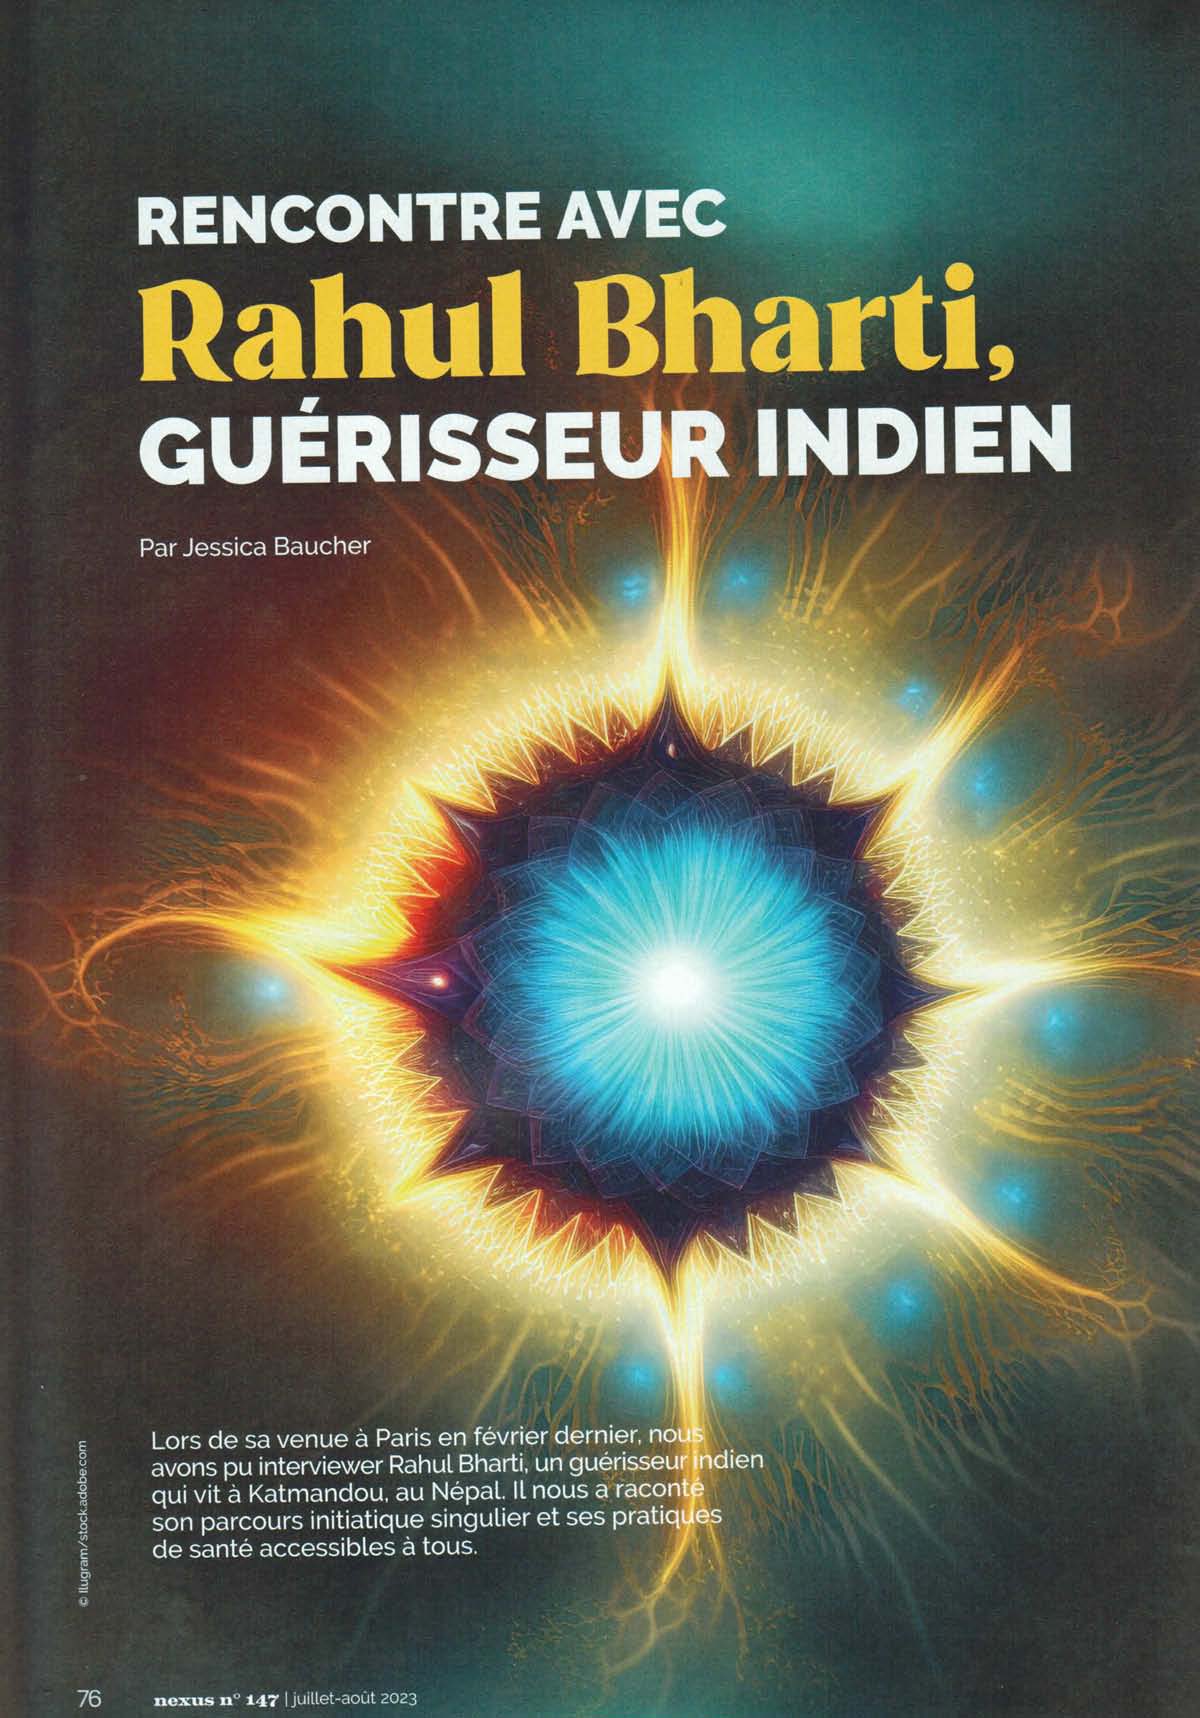 22 janvier 2024 en visio - conférence "Prévention et auto-guérison issues des traditions millénaires de l'Inde" avec Rahul Bharti